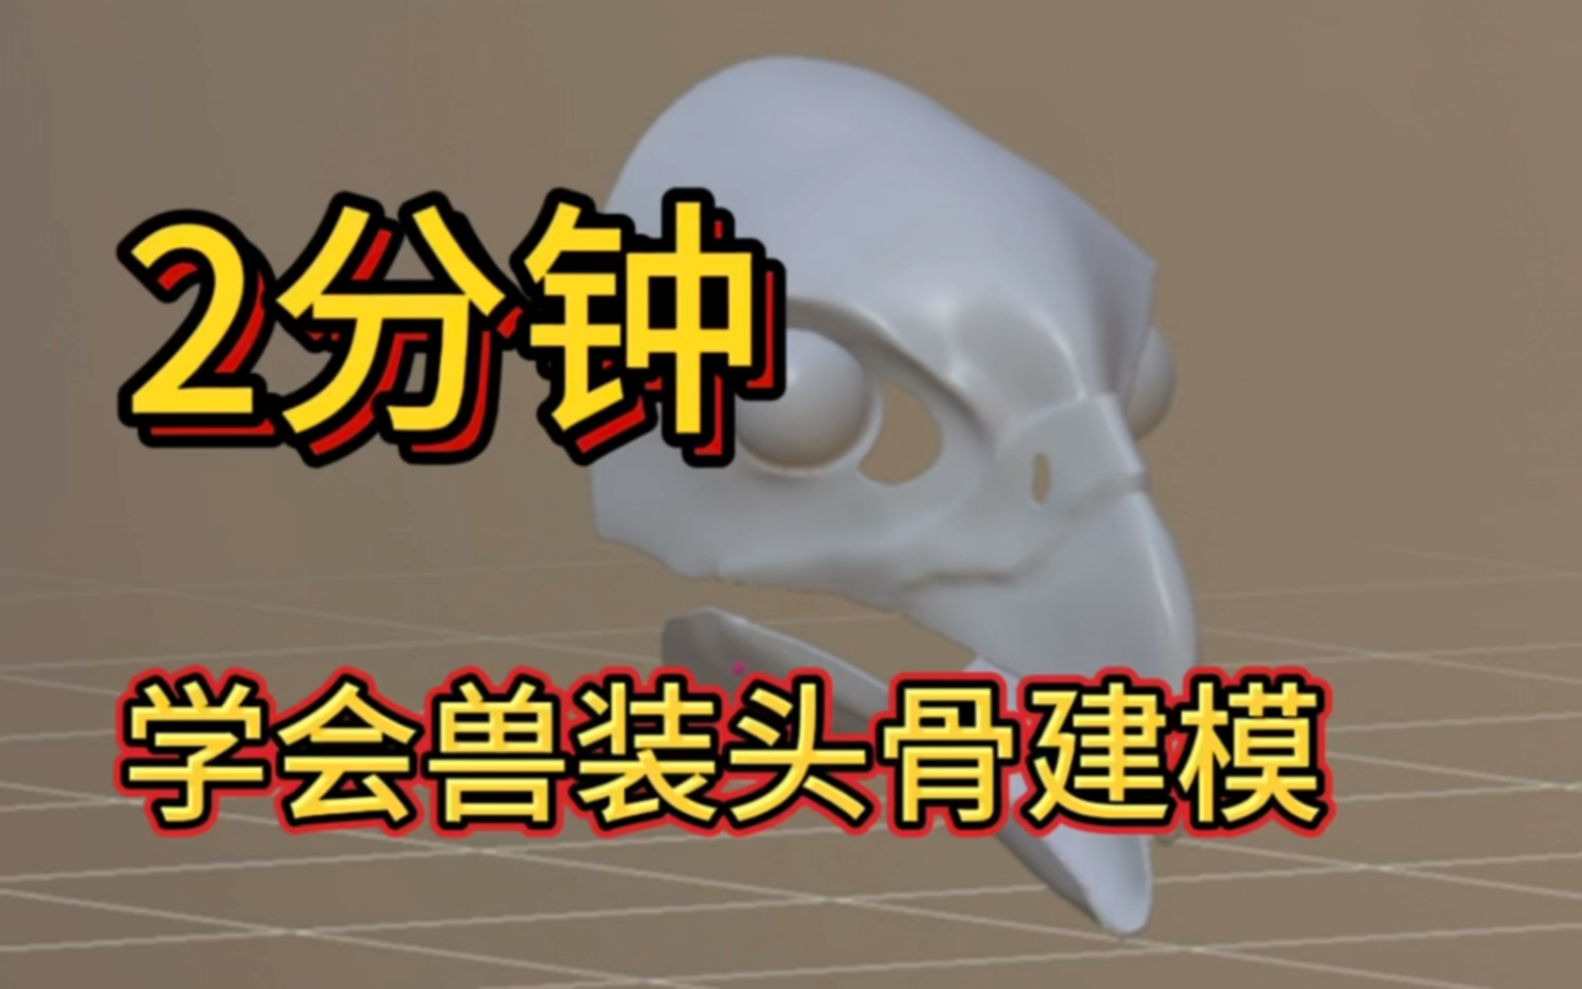 【新手向】写实兽装头骨建模教程